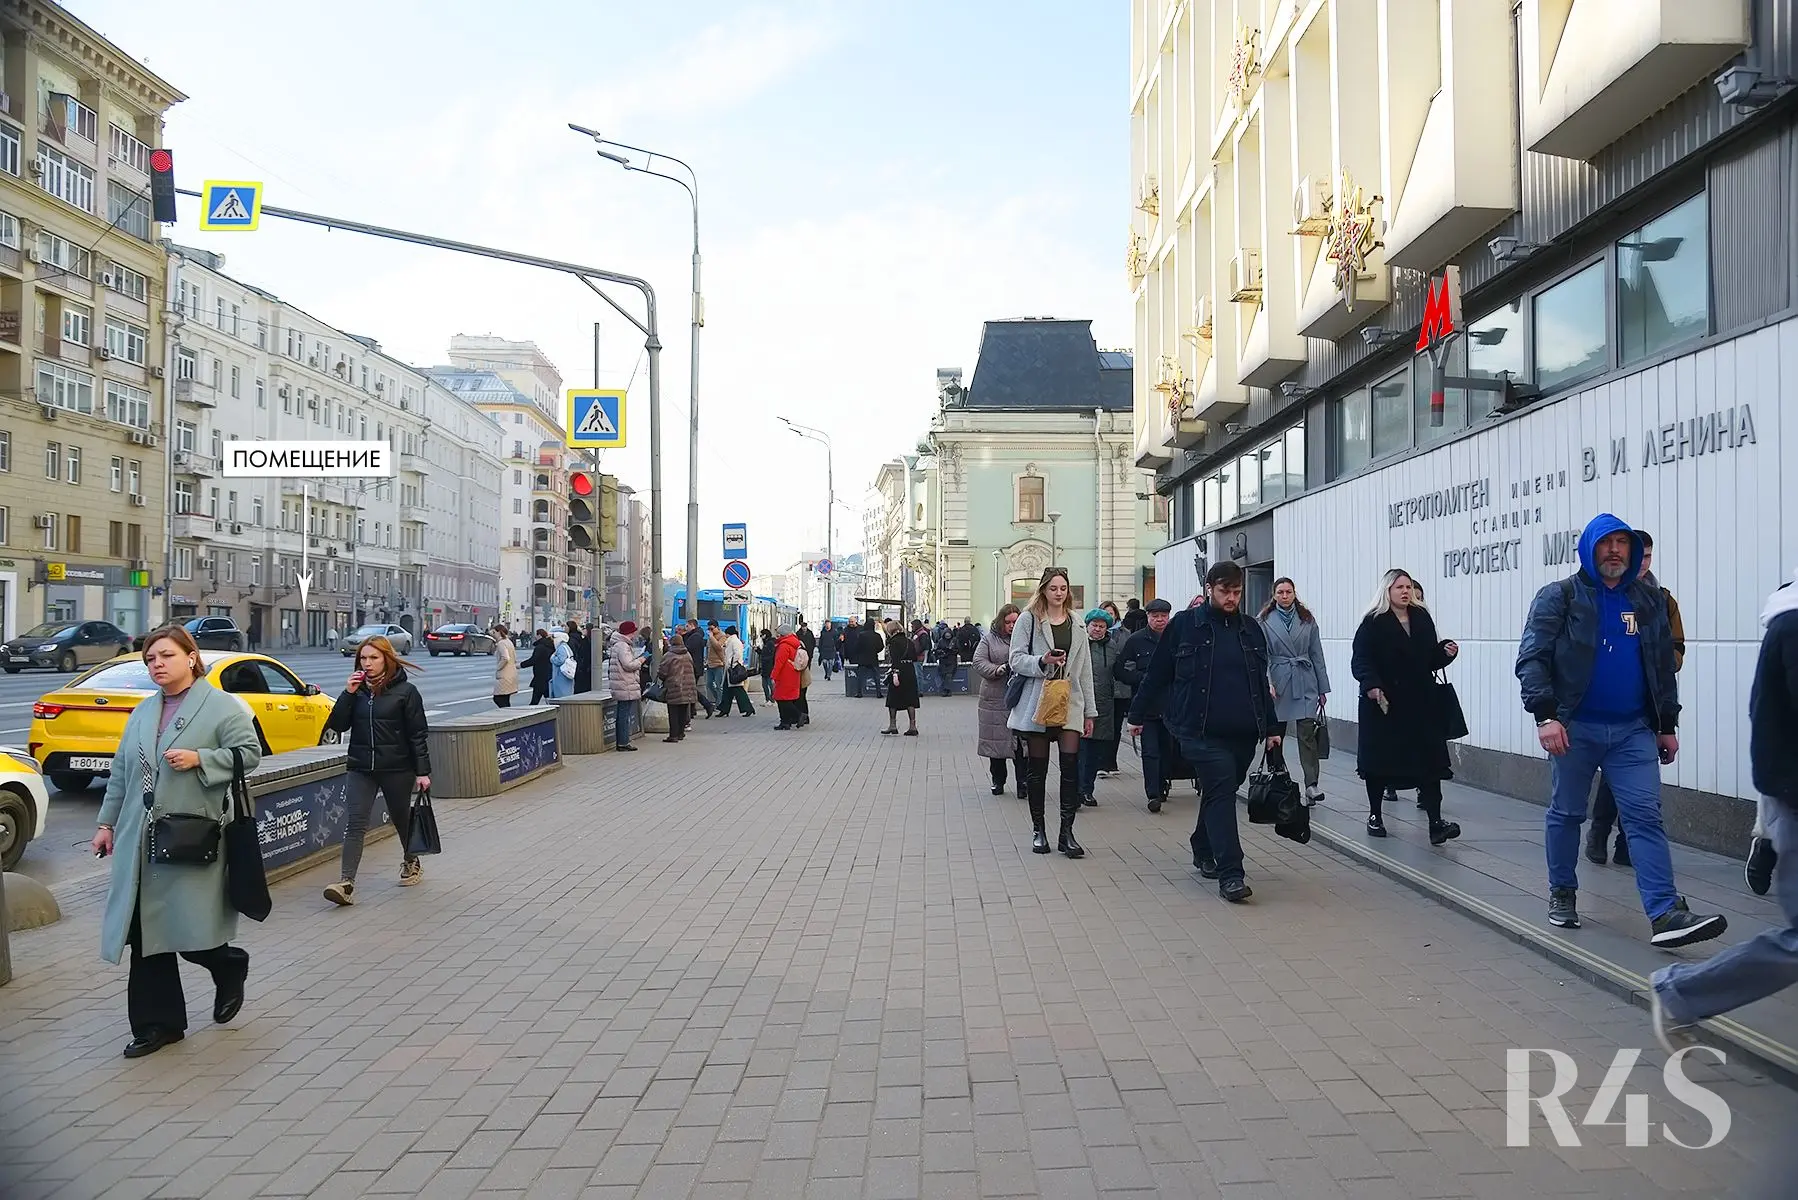 Аренда торгового помещения площадью 22.6 м2 в Москве: проспект Мира, 44 R4S | Realty4Sale